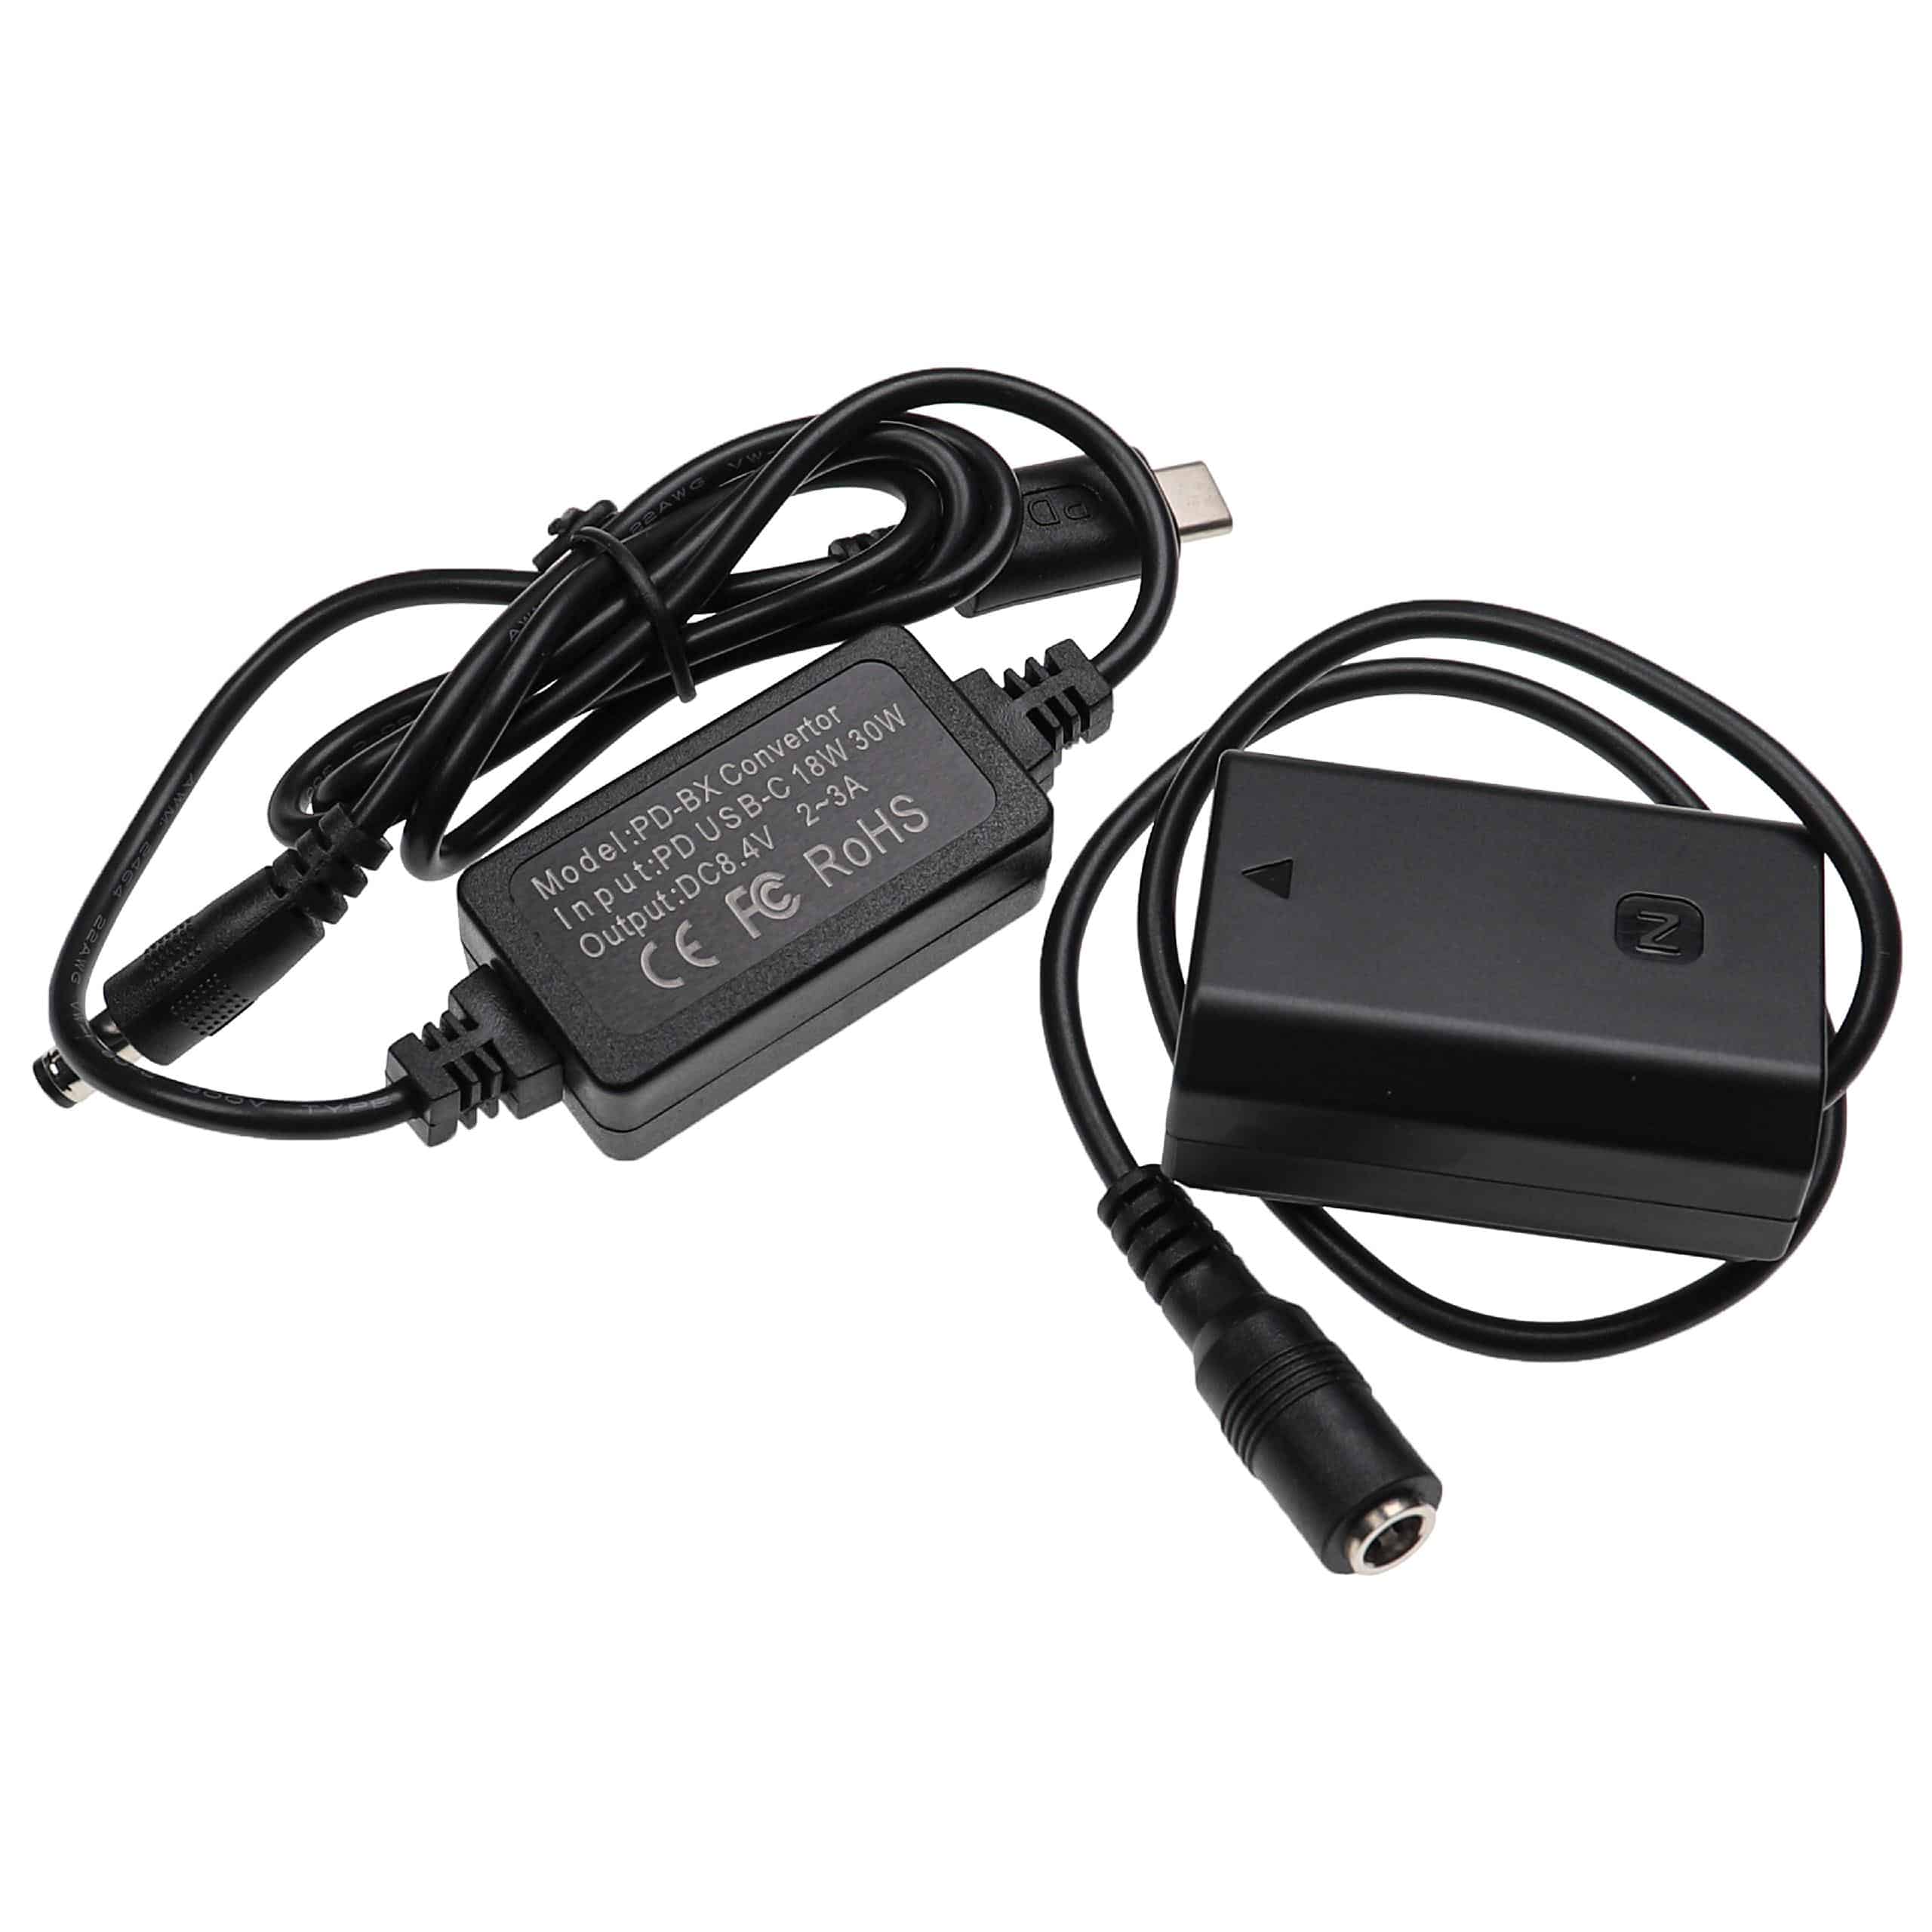 USB Netzteil als Ersatz für Sony AC-FZ100 für Kamera + DC Kuppler ersetzt Sony NP-FZ100